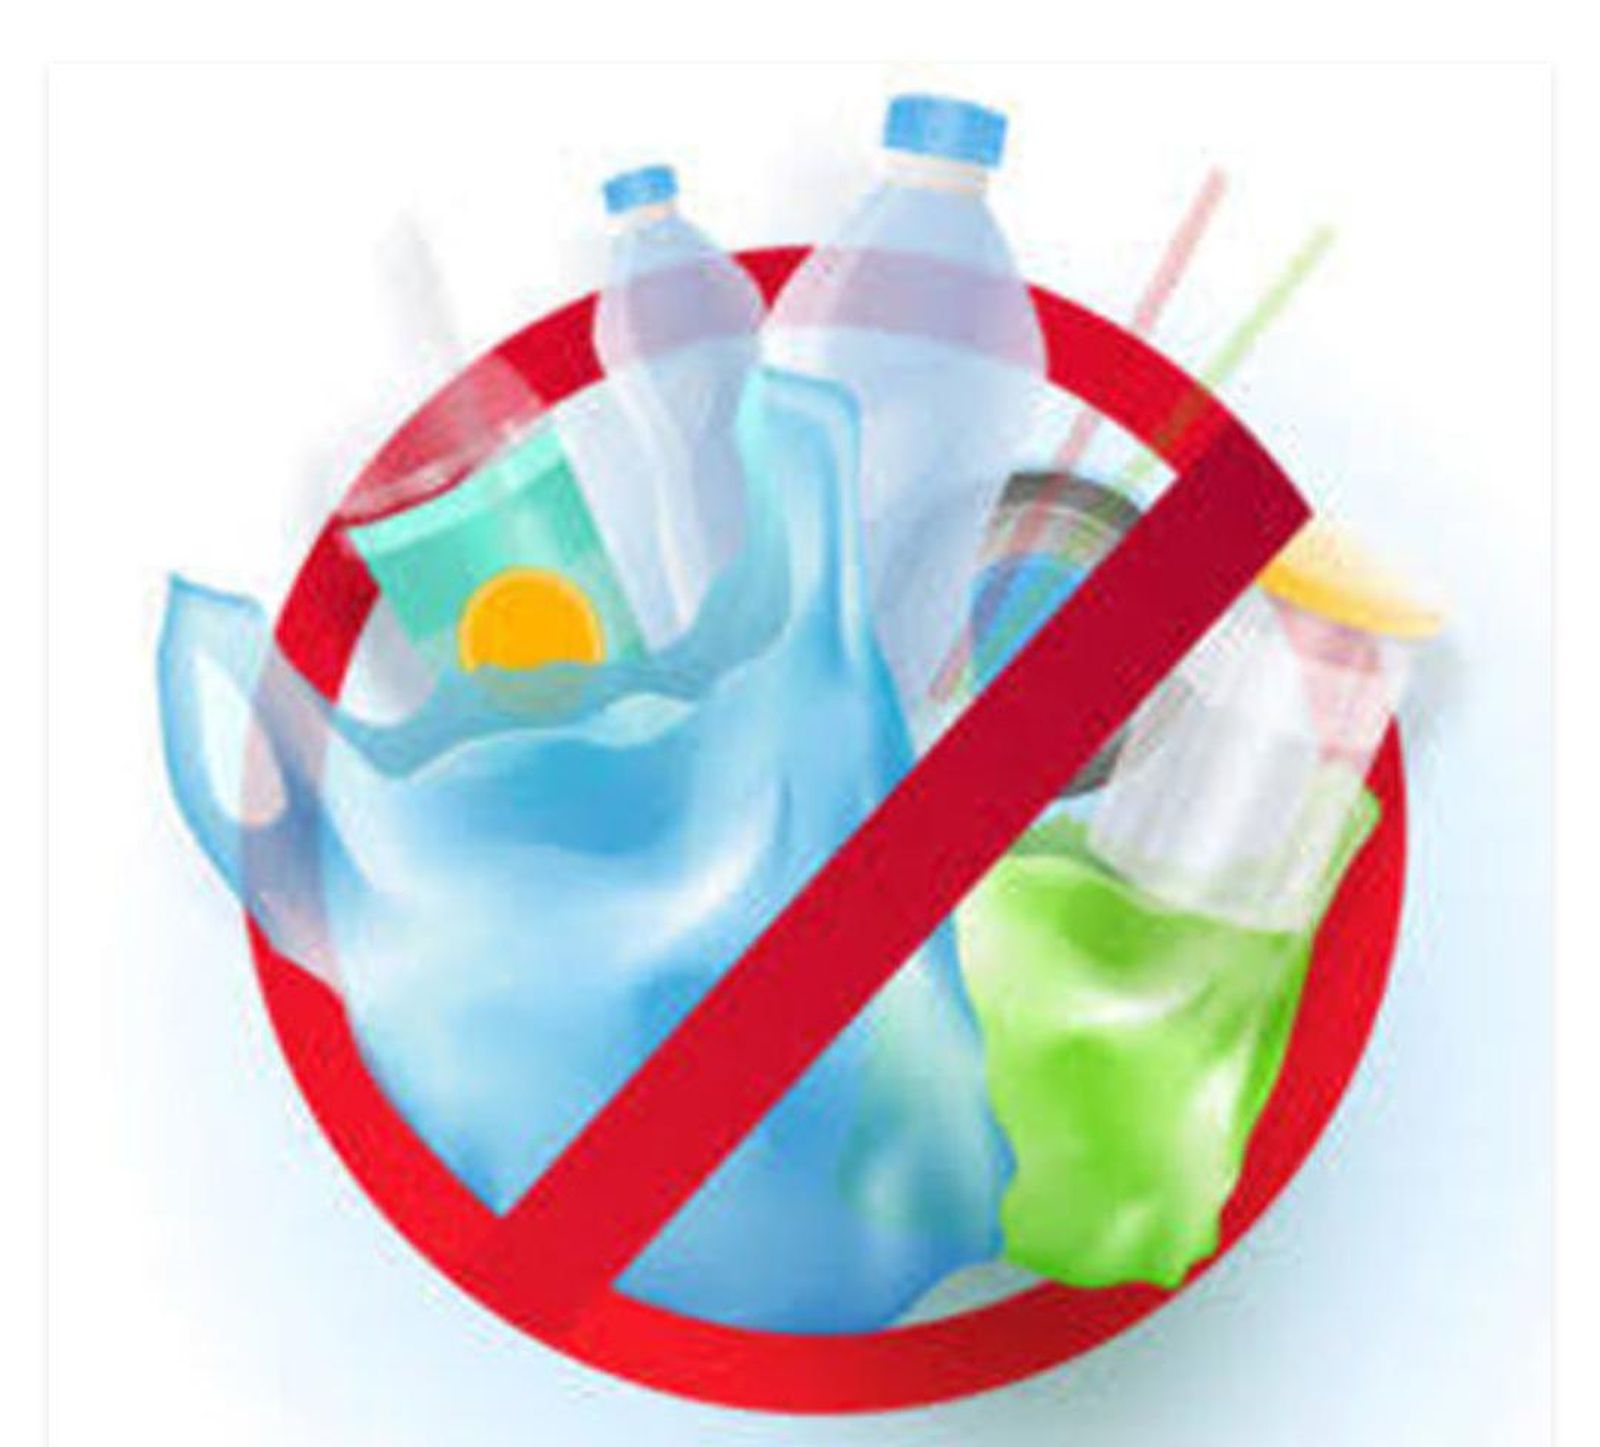 Plastic ban: सिंगल यूज प्लास्टिक पर बैन, 1जुलाई से इन प्लास्टिक वस्तुओं का प्रयोग बंद